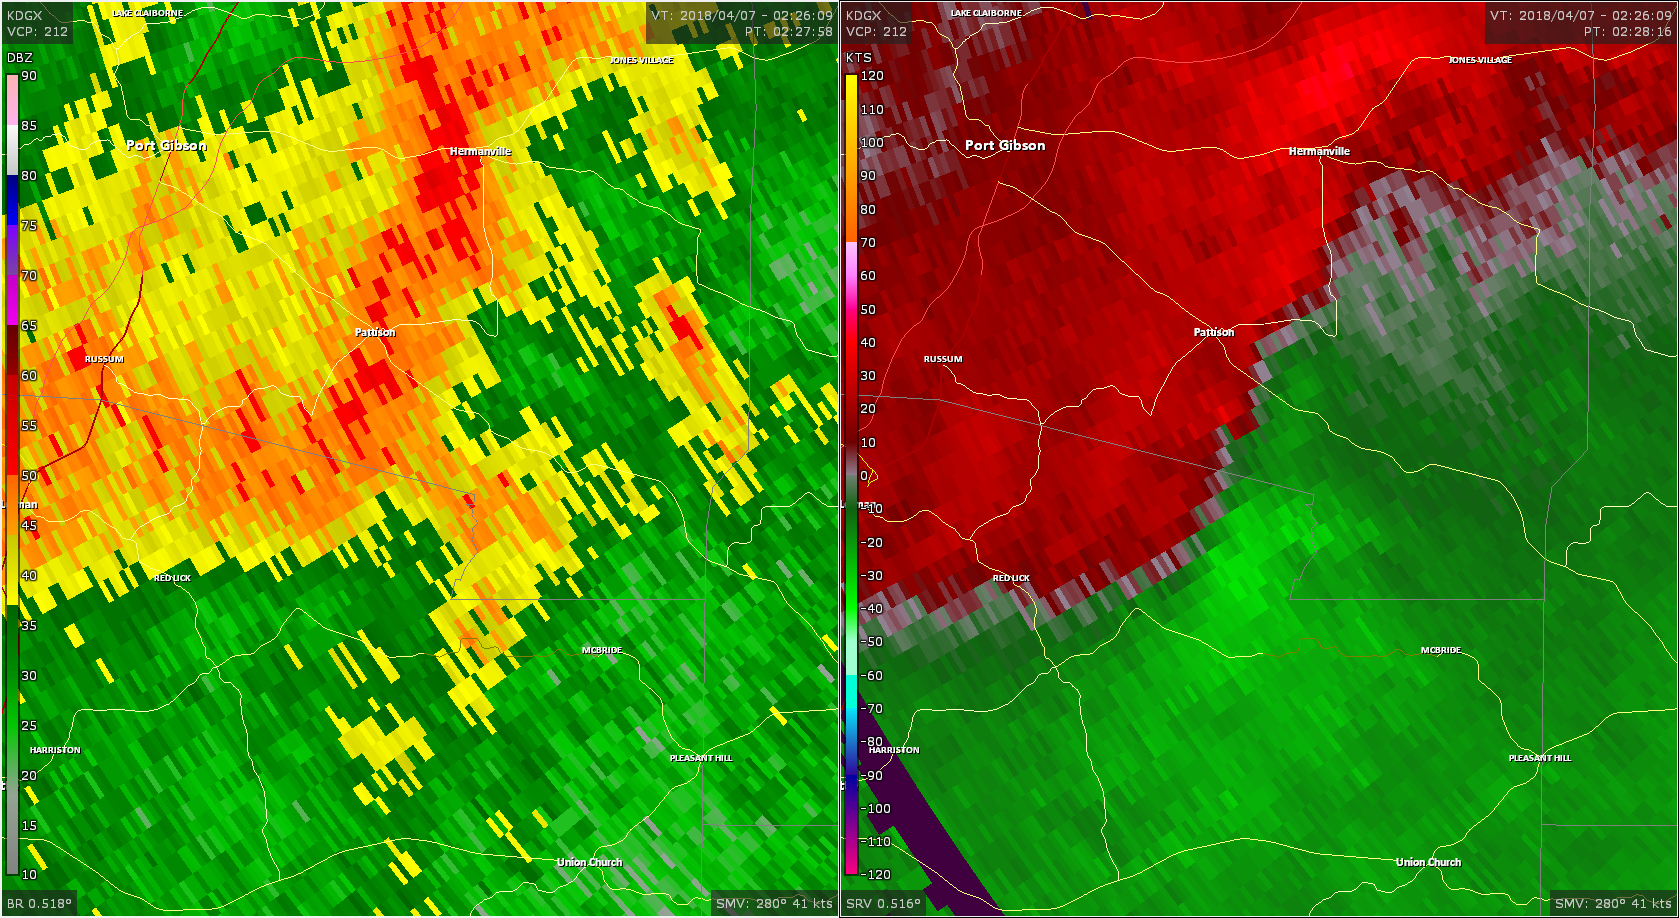 Radar - Claiborne County Tornado